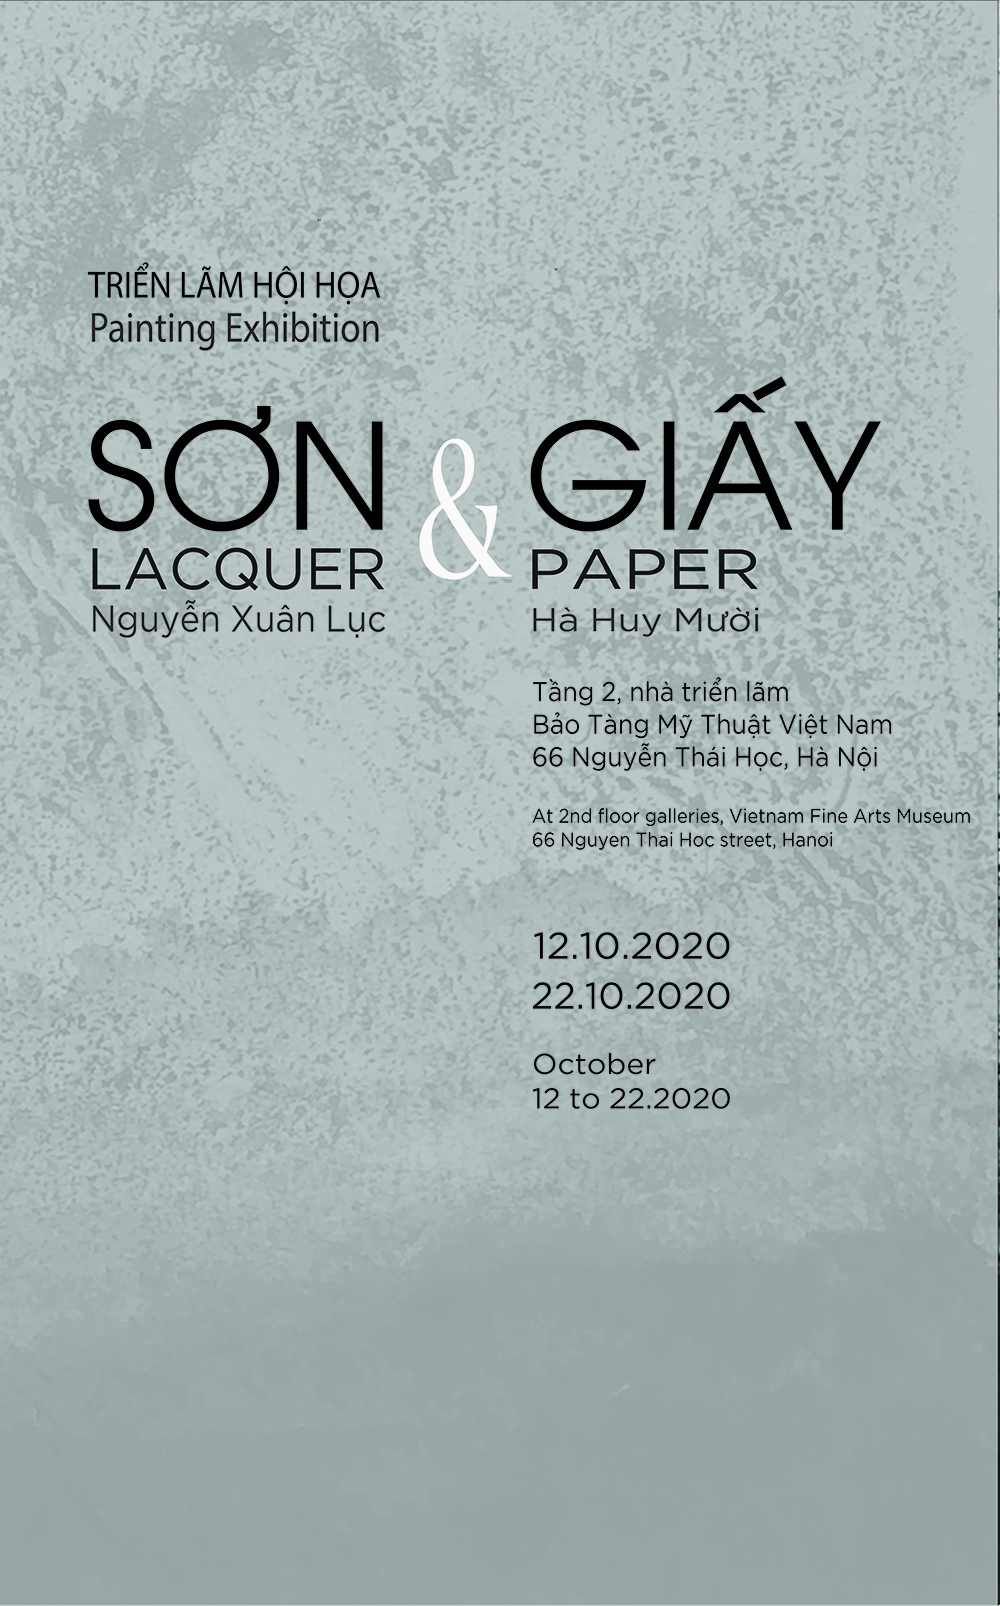 LACQUER & PAPER / Dua Exhibition by Hà Huy Mười & Nguyễn Xuân Lục at Vietnam Fine Arts Museum (2020)